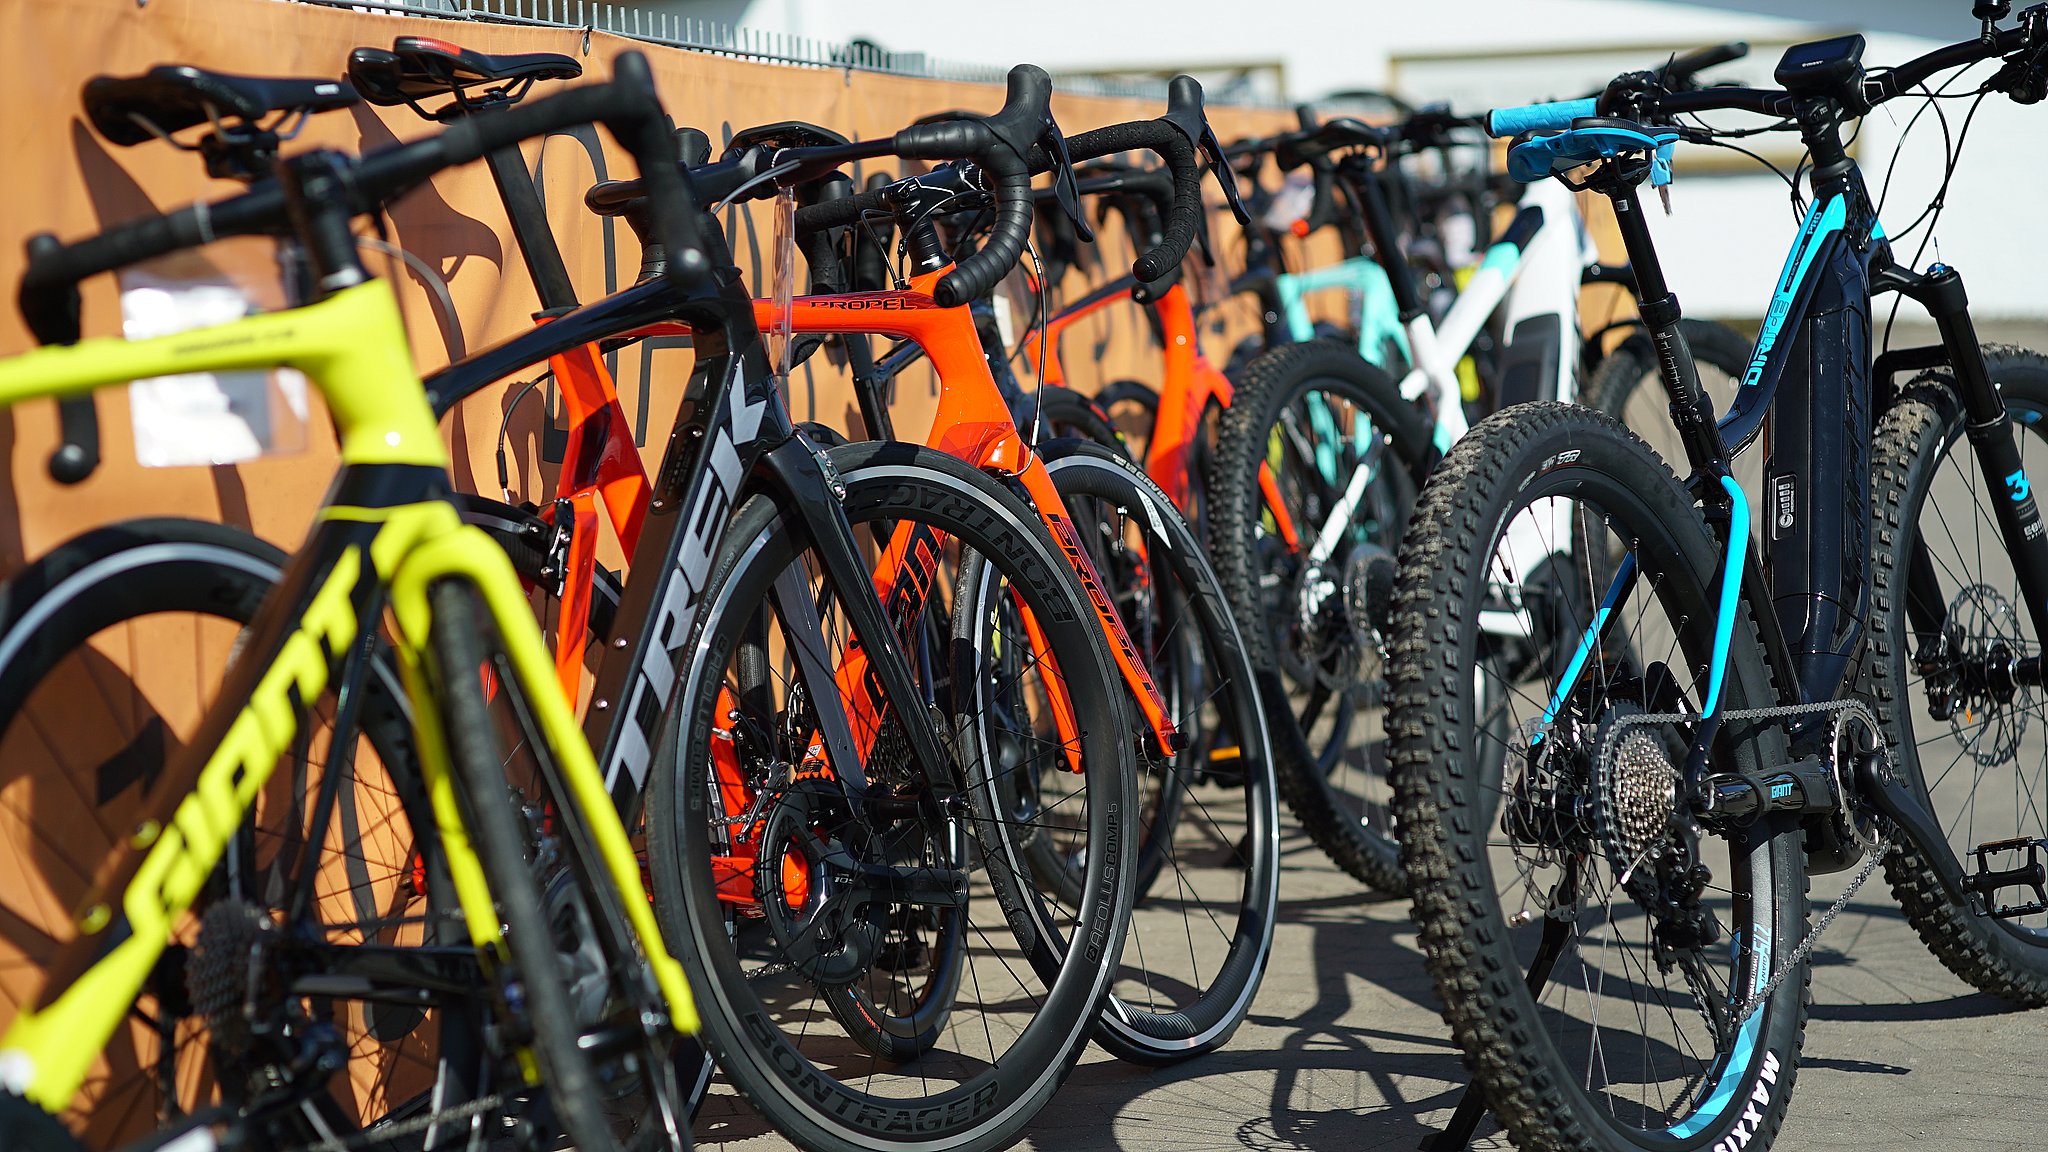 Cykeltyve slår til Racercykler 500.000 kroner stjålet i Silkeborg | TV MIDTVEST